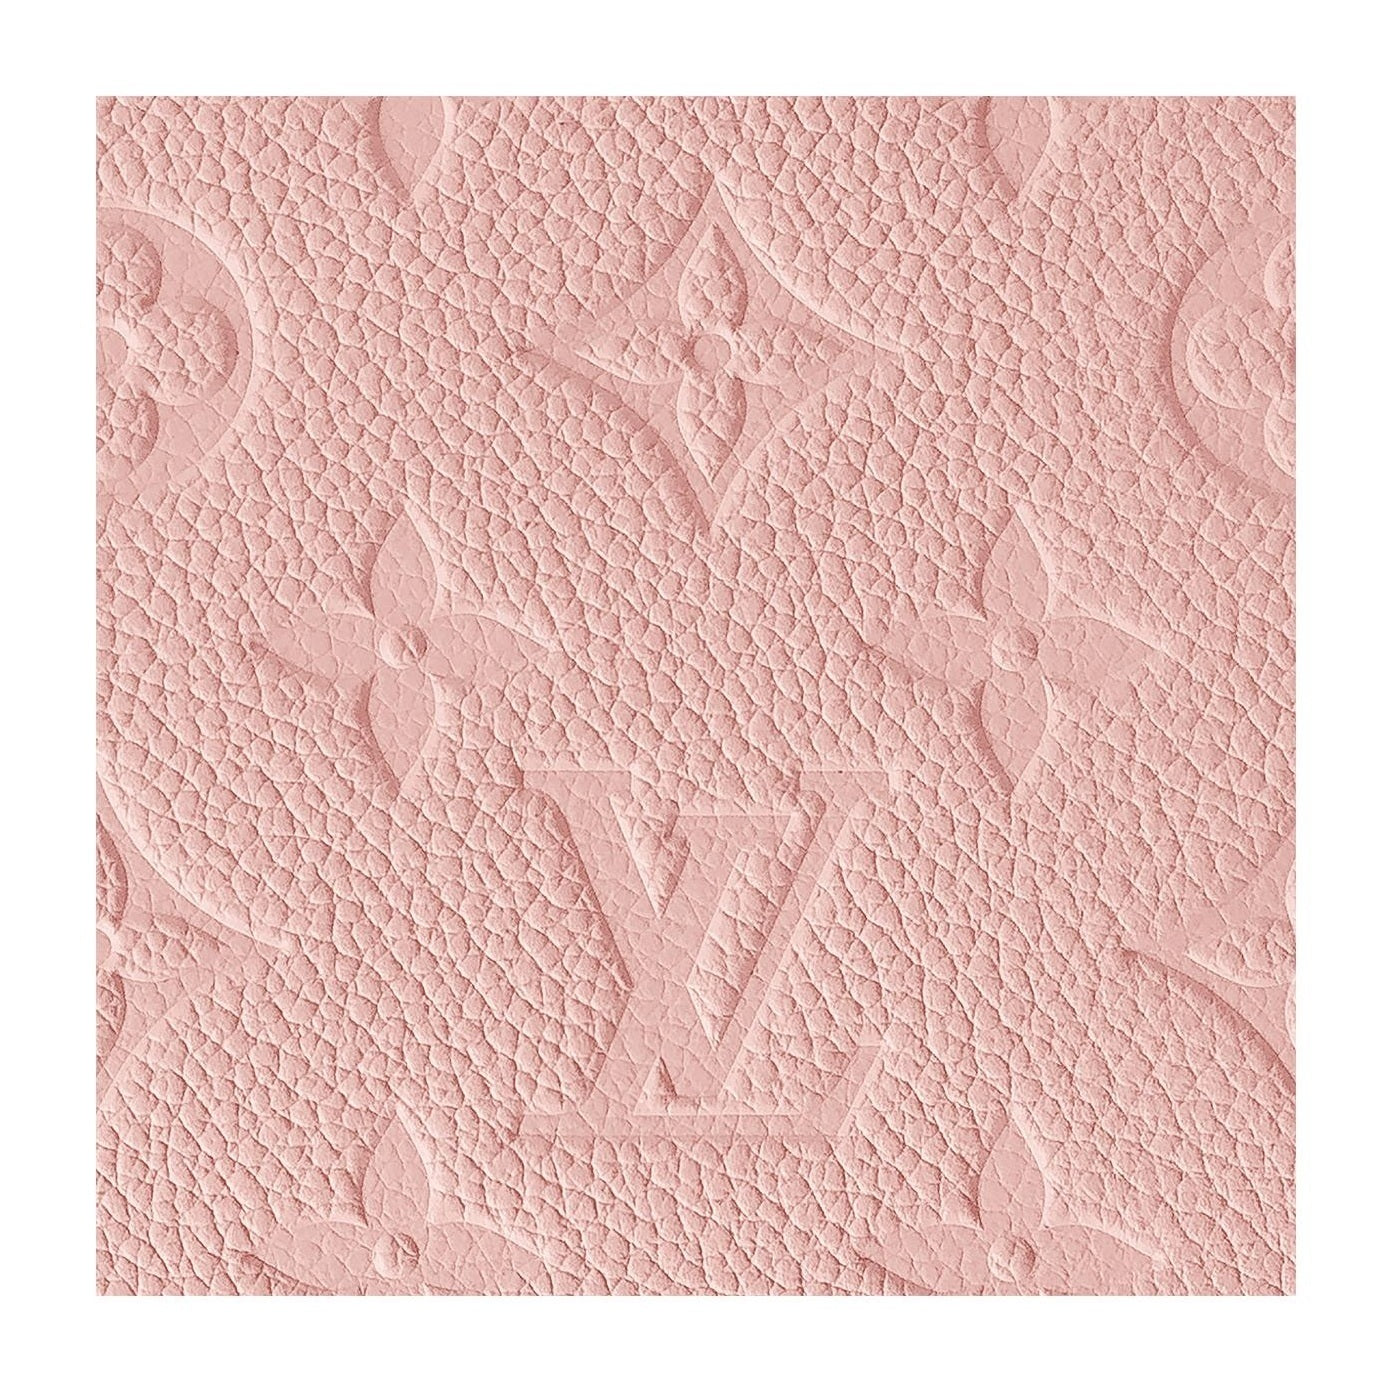 M64161 Louis Vuitton 2019 Monogram Empreinte Clémence Wallet-Rose